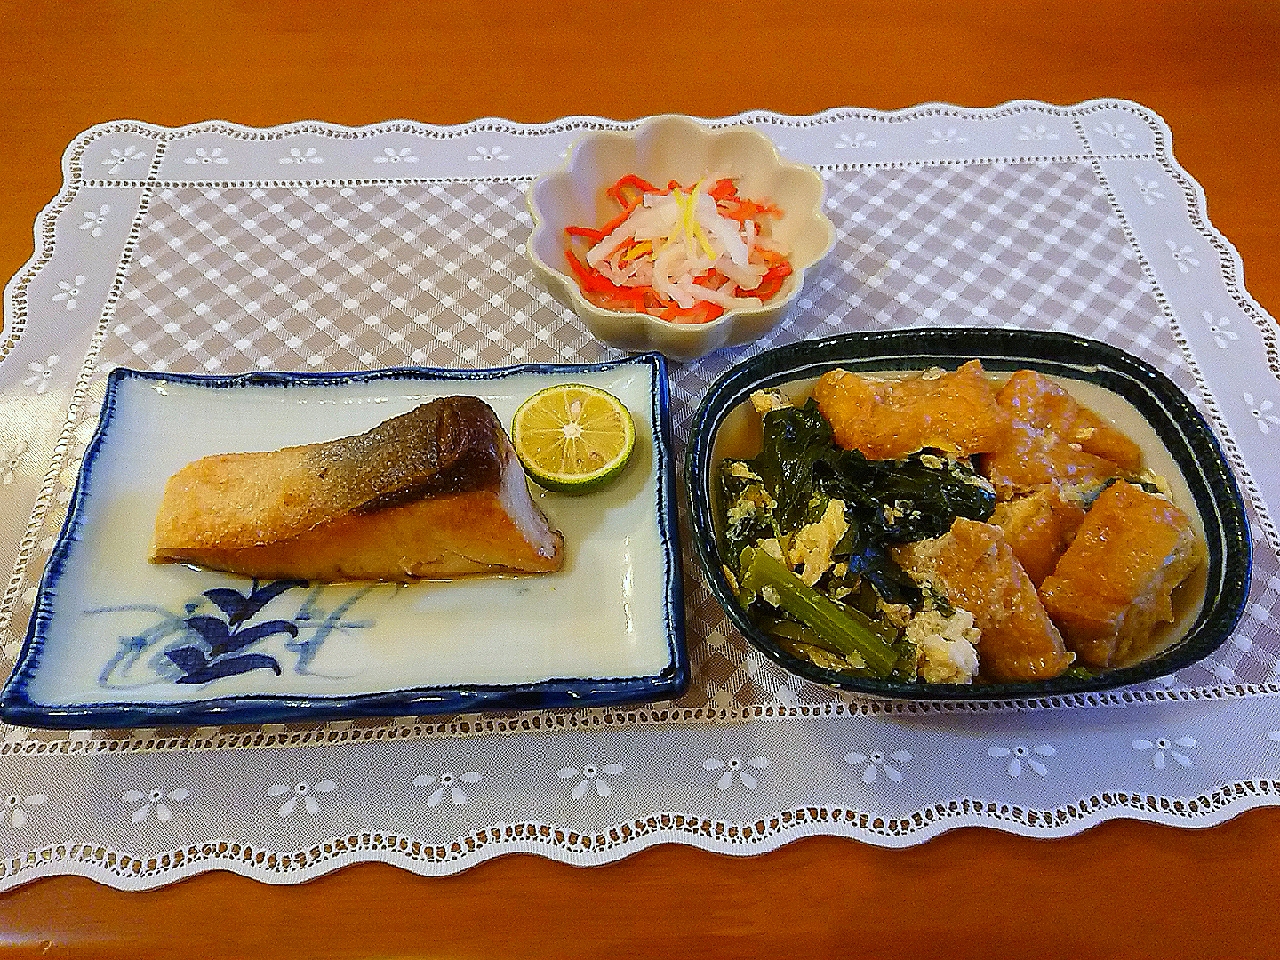 ブリ塩焼き大和揚げと小松菜の卵とじ三色なます Chikako Snapdish スナップディッシュ Id 0uo5ya